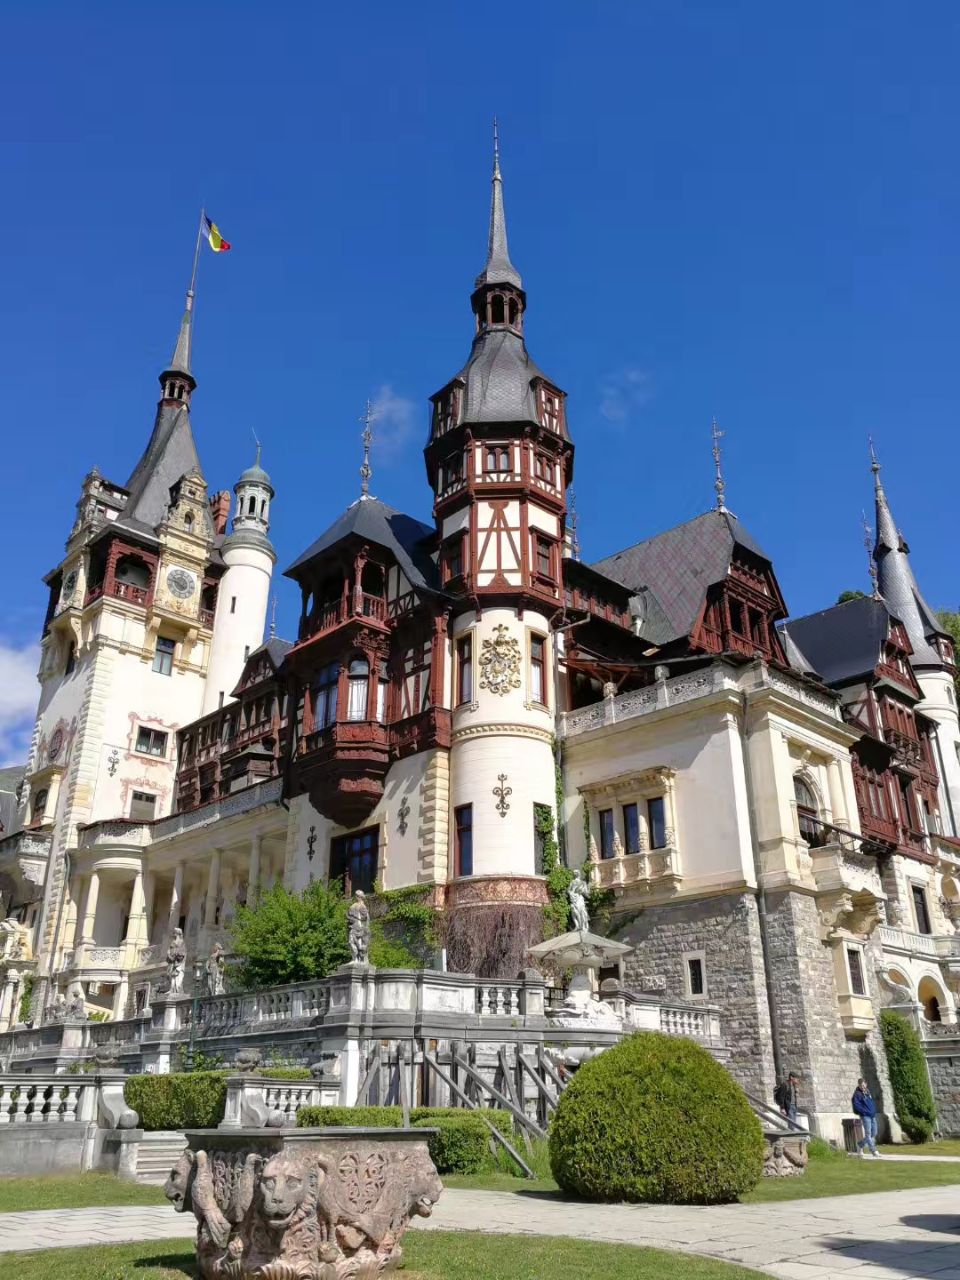 派勒斯城堡坐落于罗马尼亚首都布加勒斯特以北约130公里一个叫锡纳亚